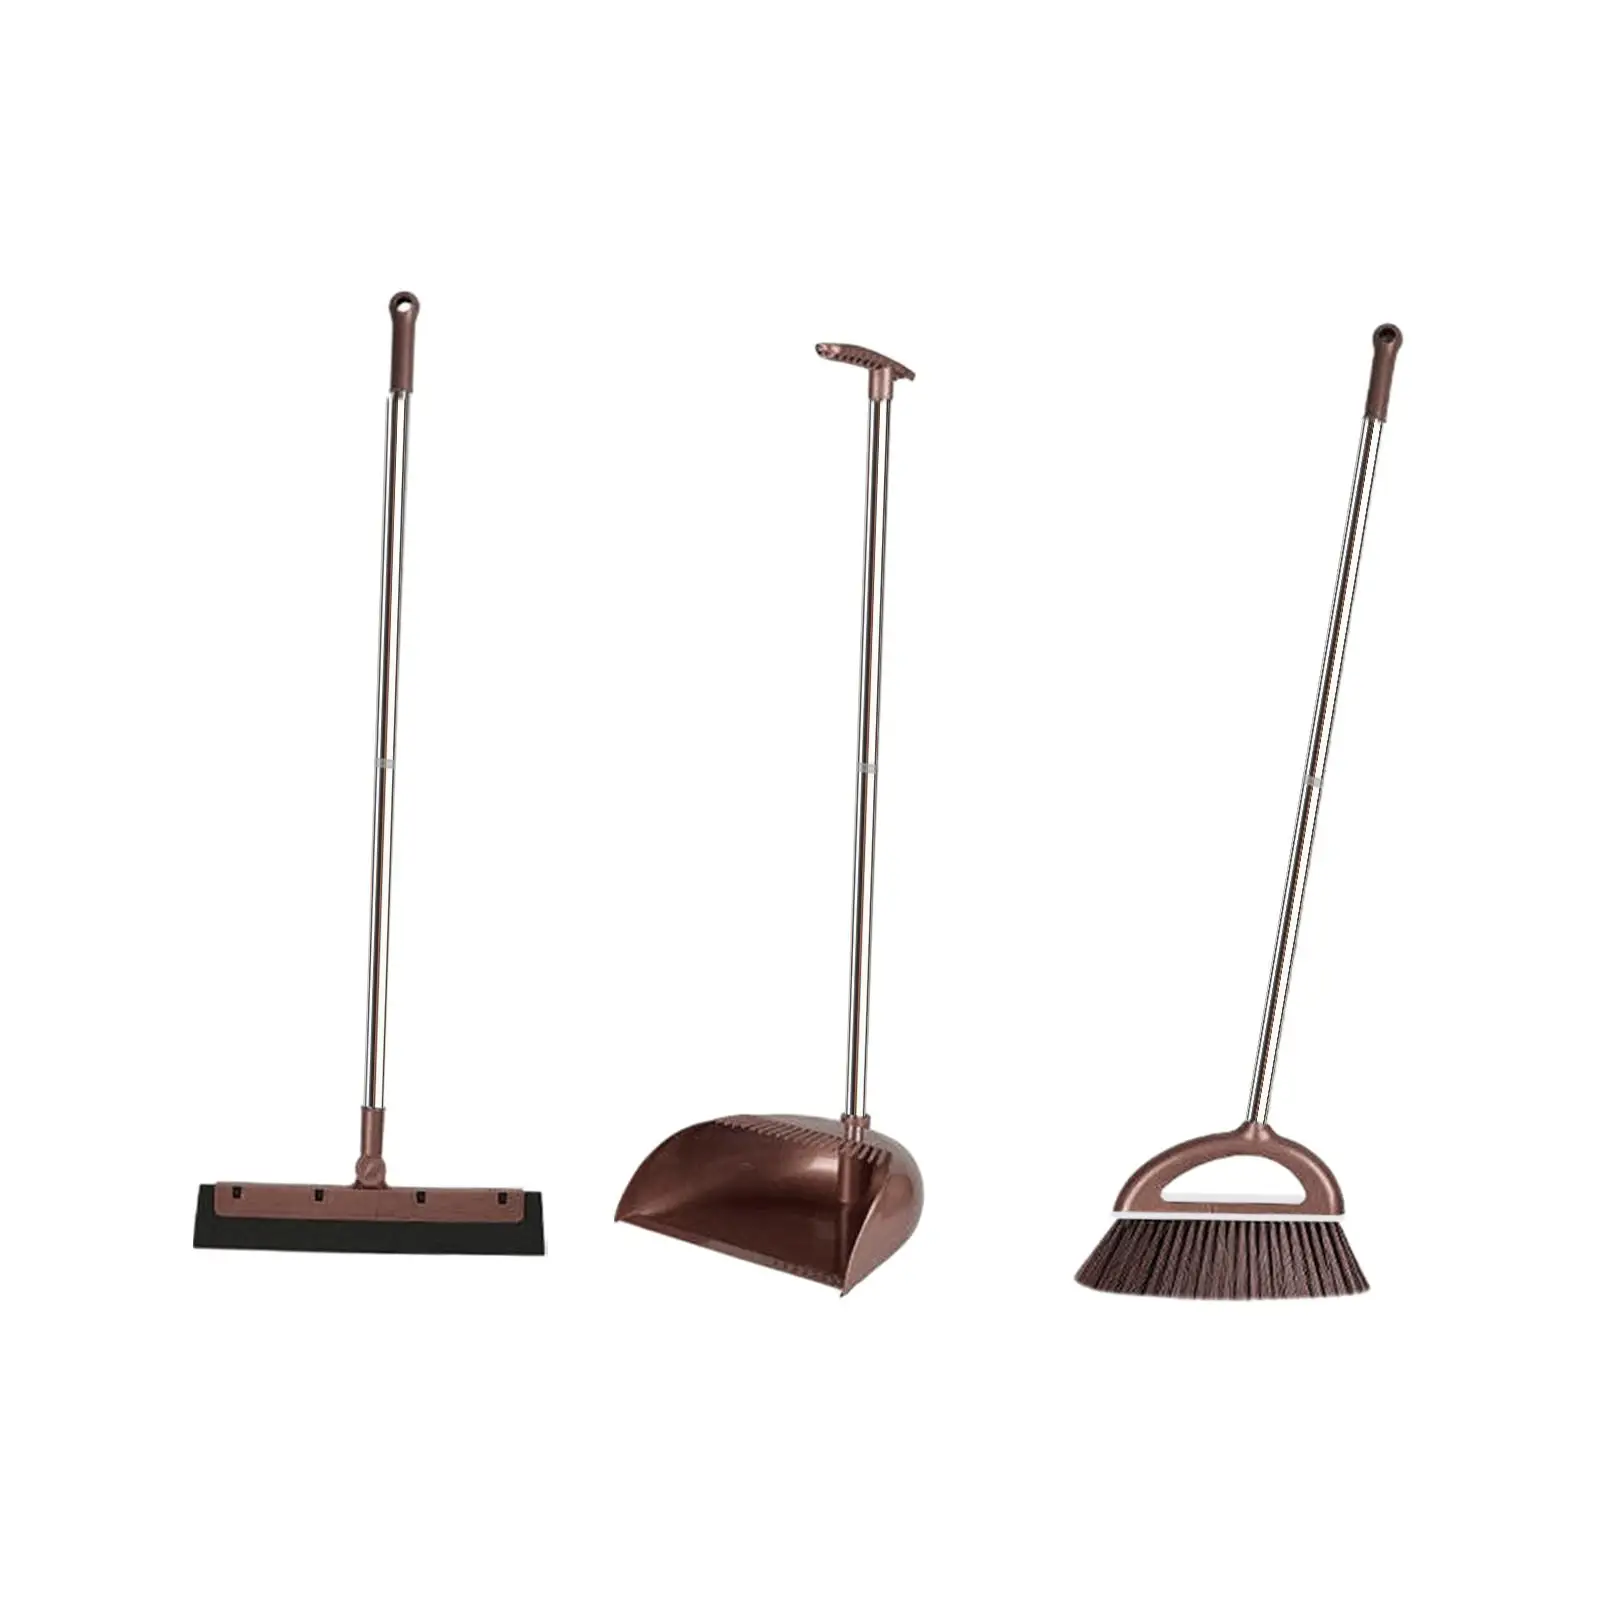 3x Broom and Dustpan Set Floor Wiper Multifunction Dust Brooms Set for Outdoor Kitchen Office Indoor Cleaning Accessories